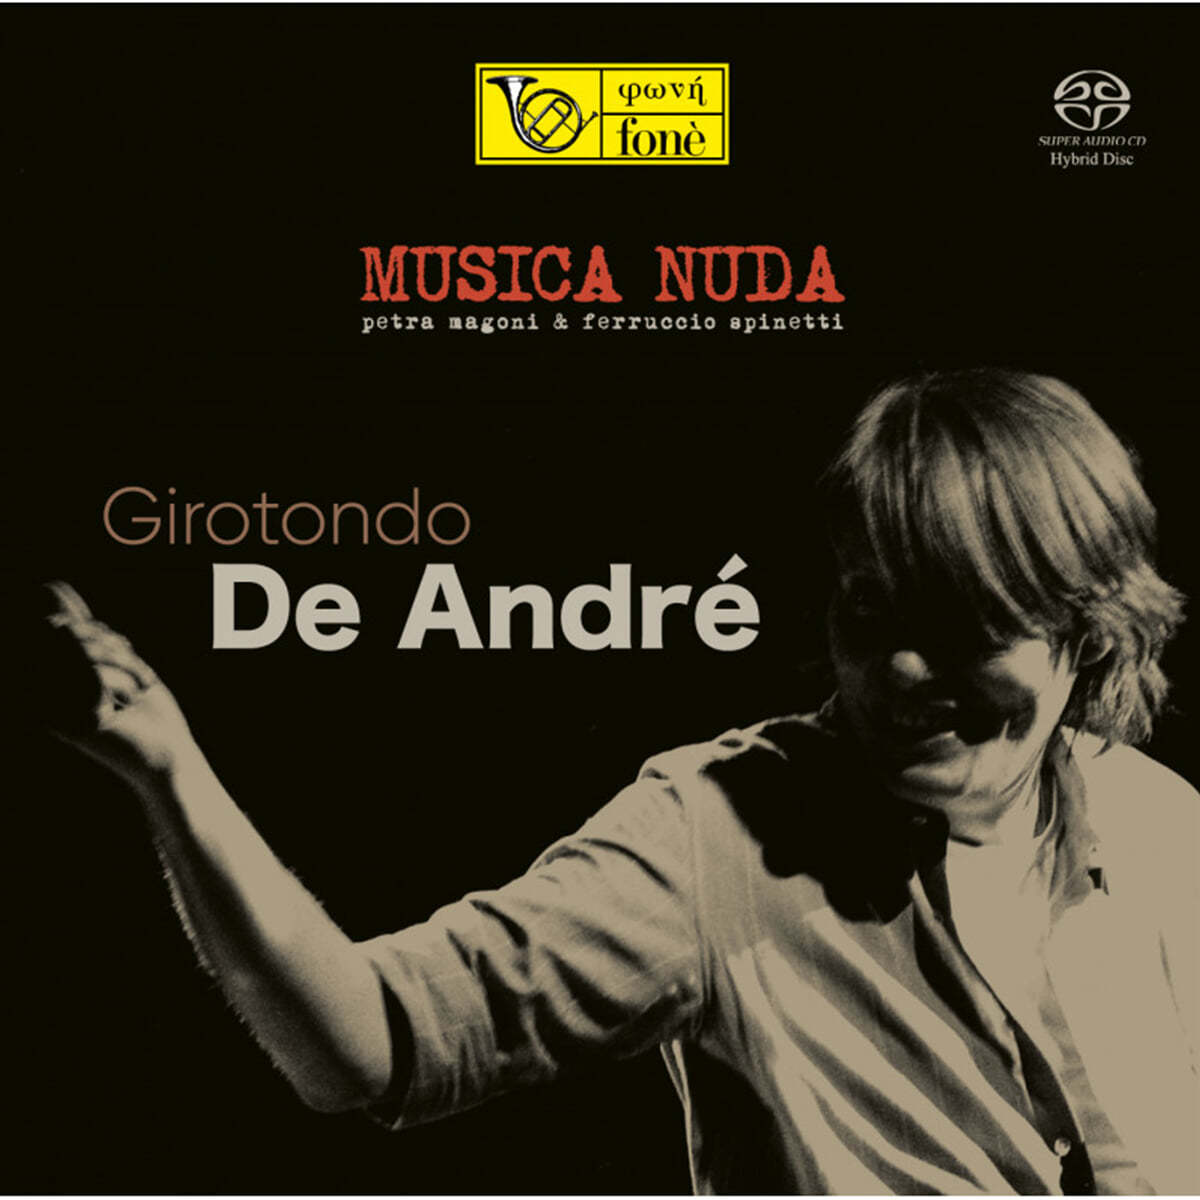 Musica Nuda (무지카 누다) - Girotondo De Andre